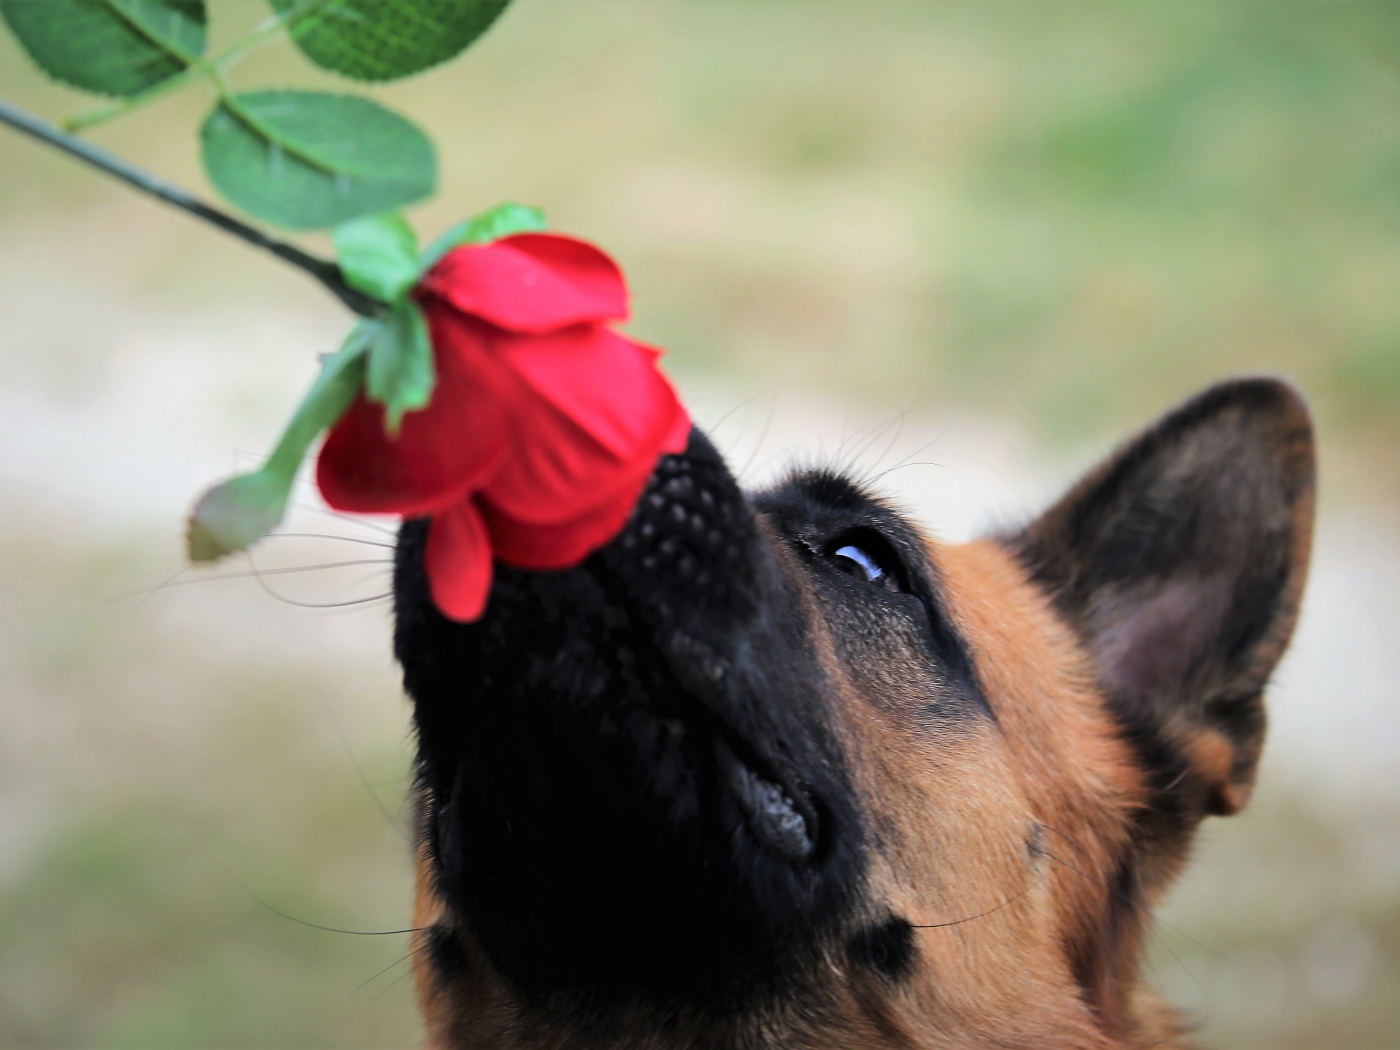 German shepherd sniffing a rose